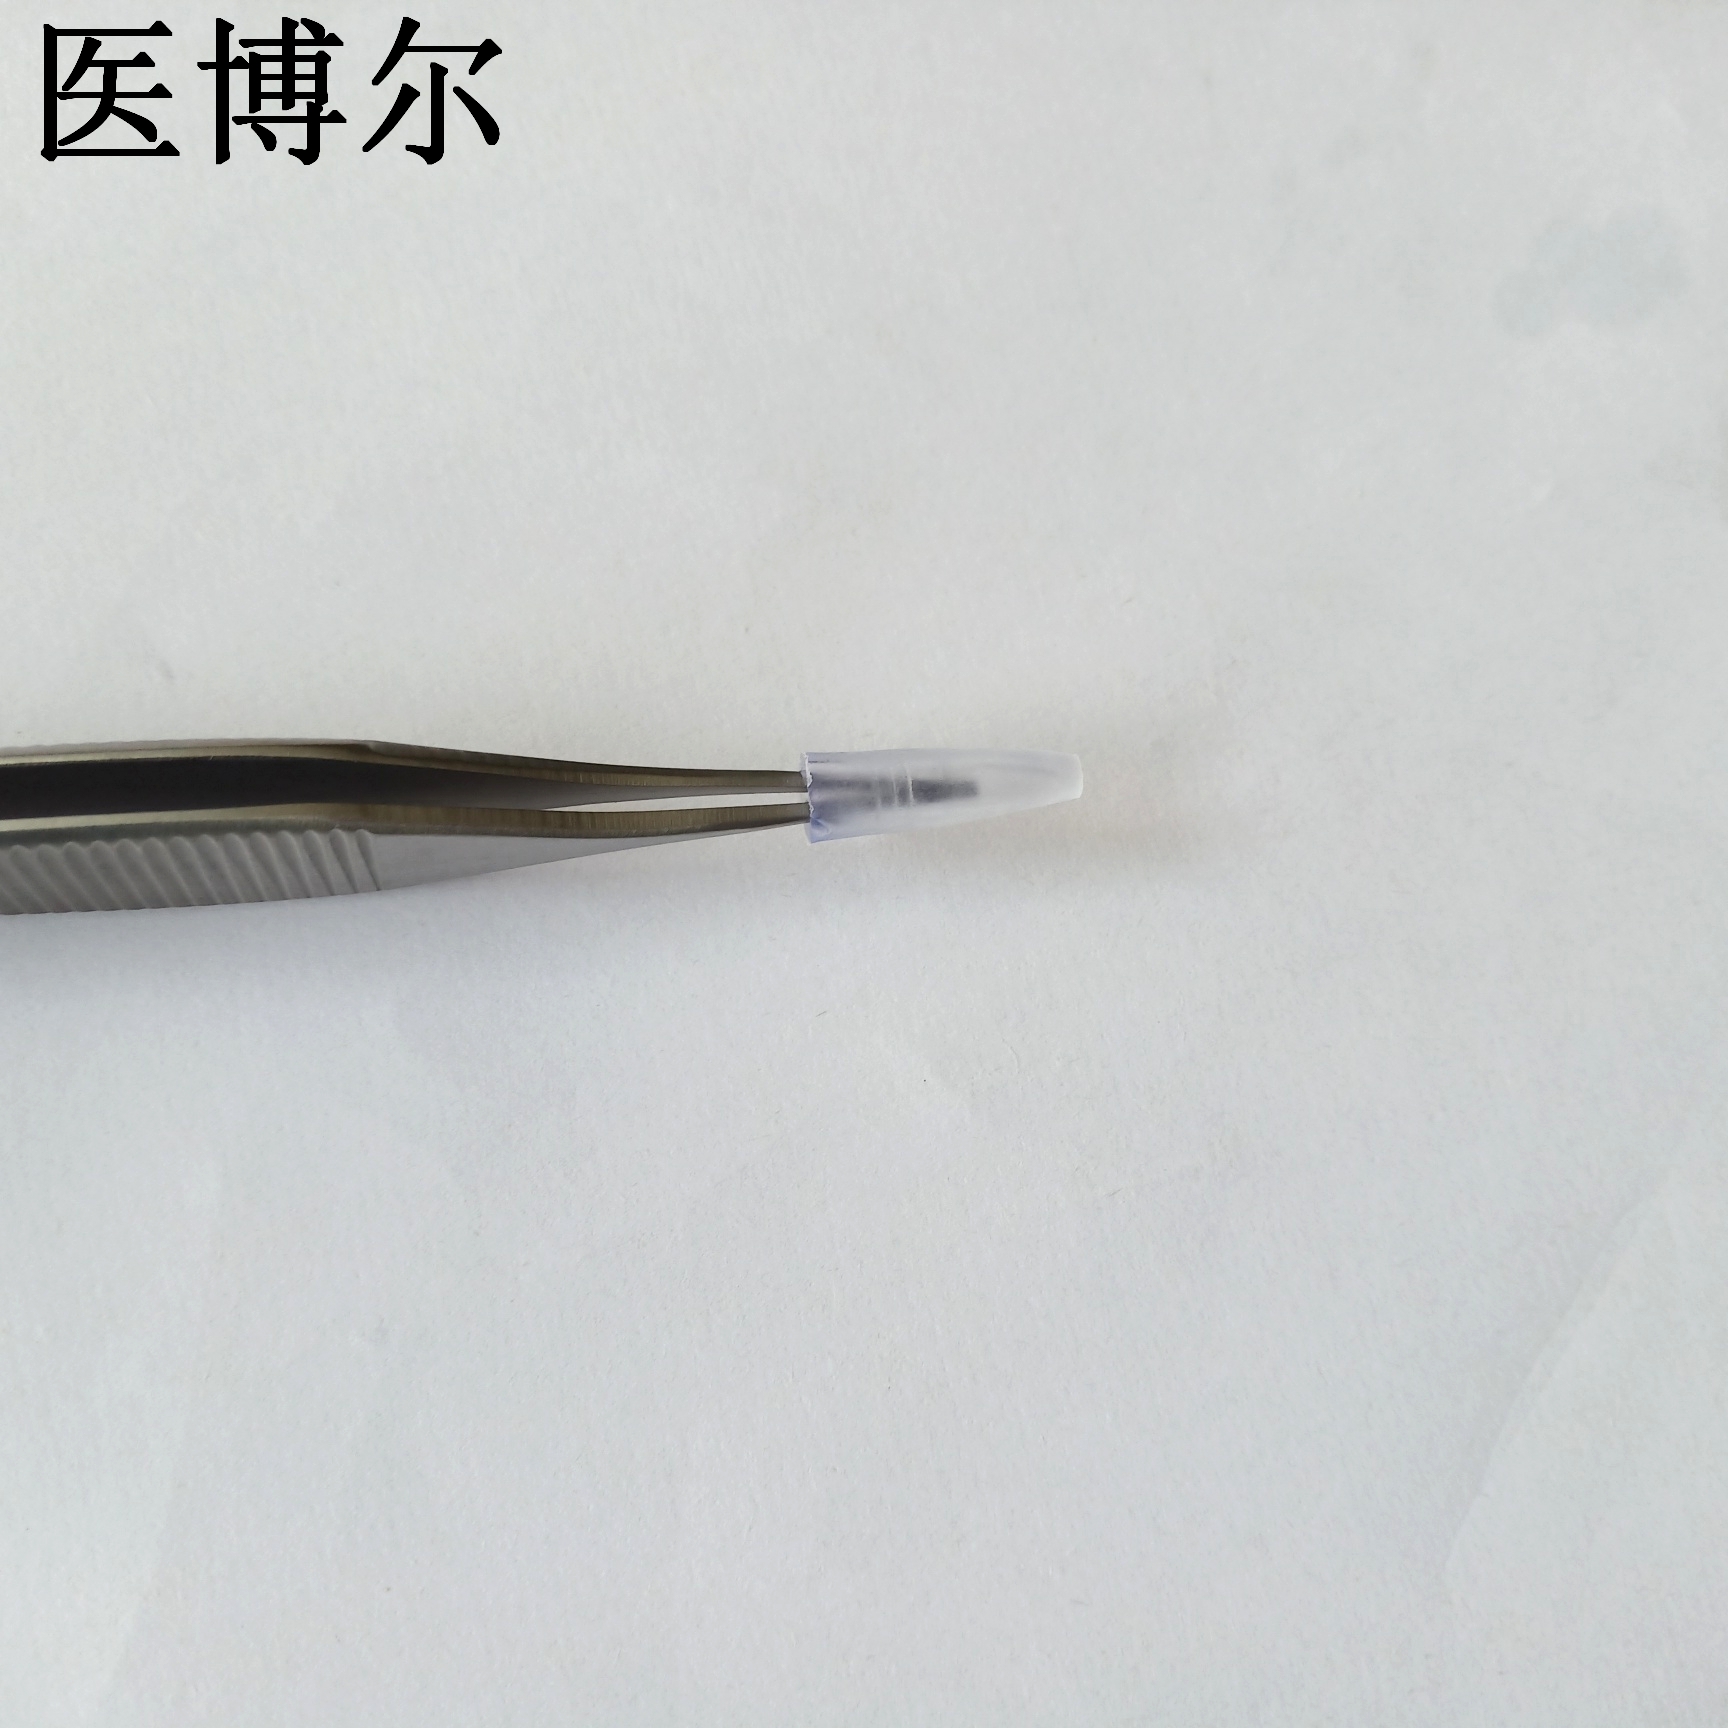 14cm整形镊0 (9)_看图王.jpg